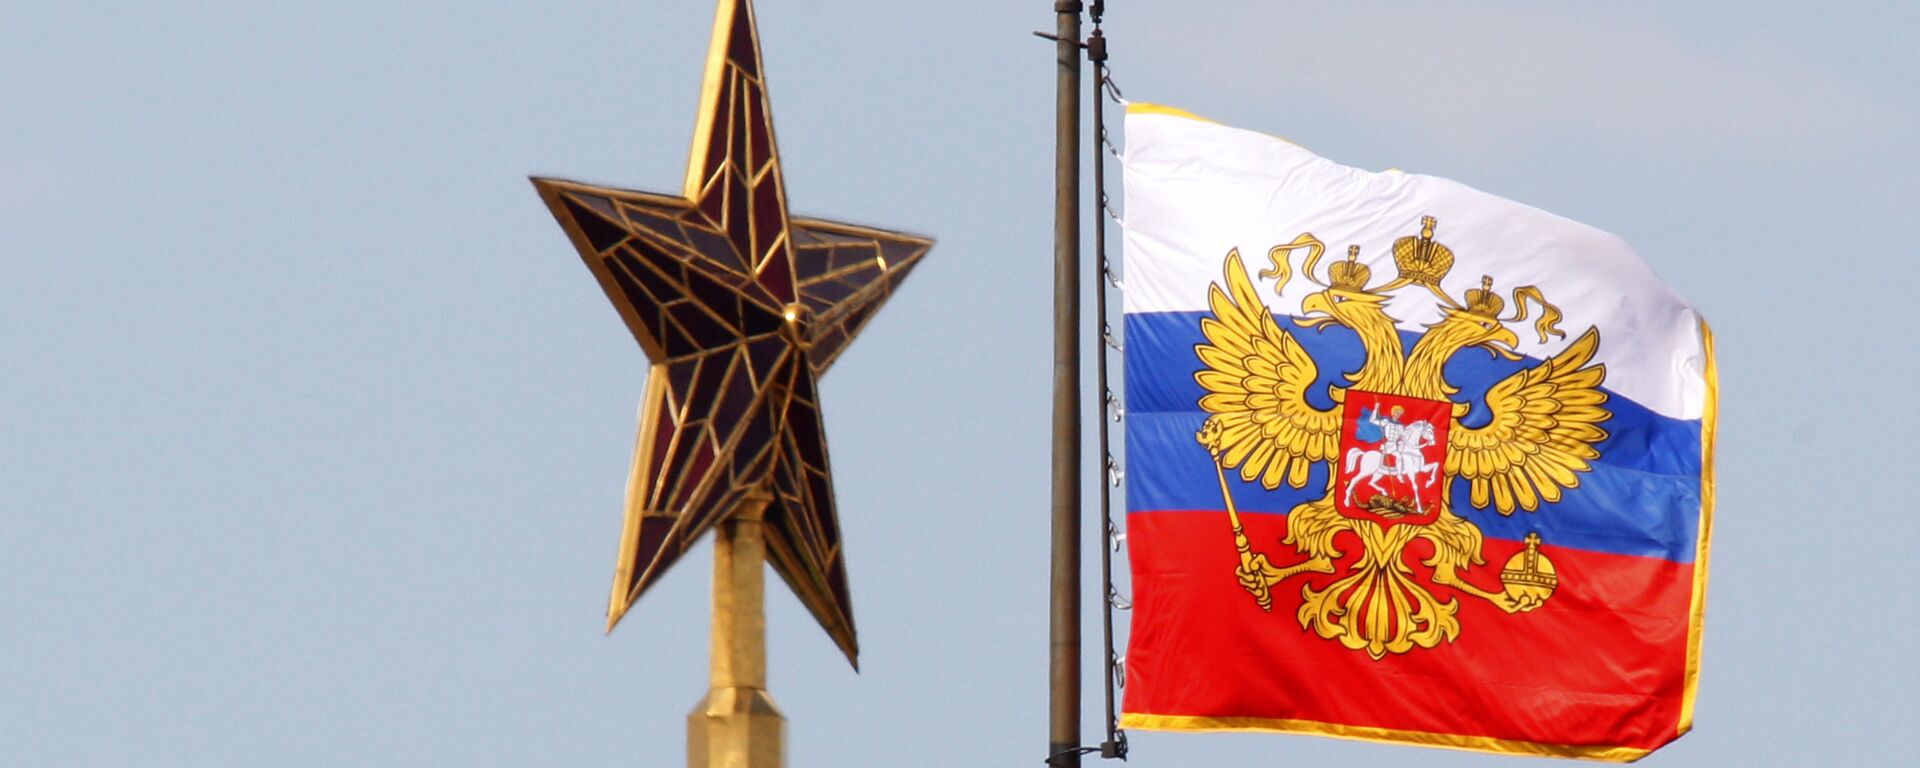 El estandarte (bandera) del presidente de la Federación de Rusia - Sputnik Mundo, 1920, 15.02.2022